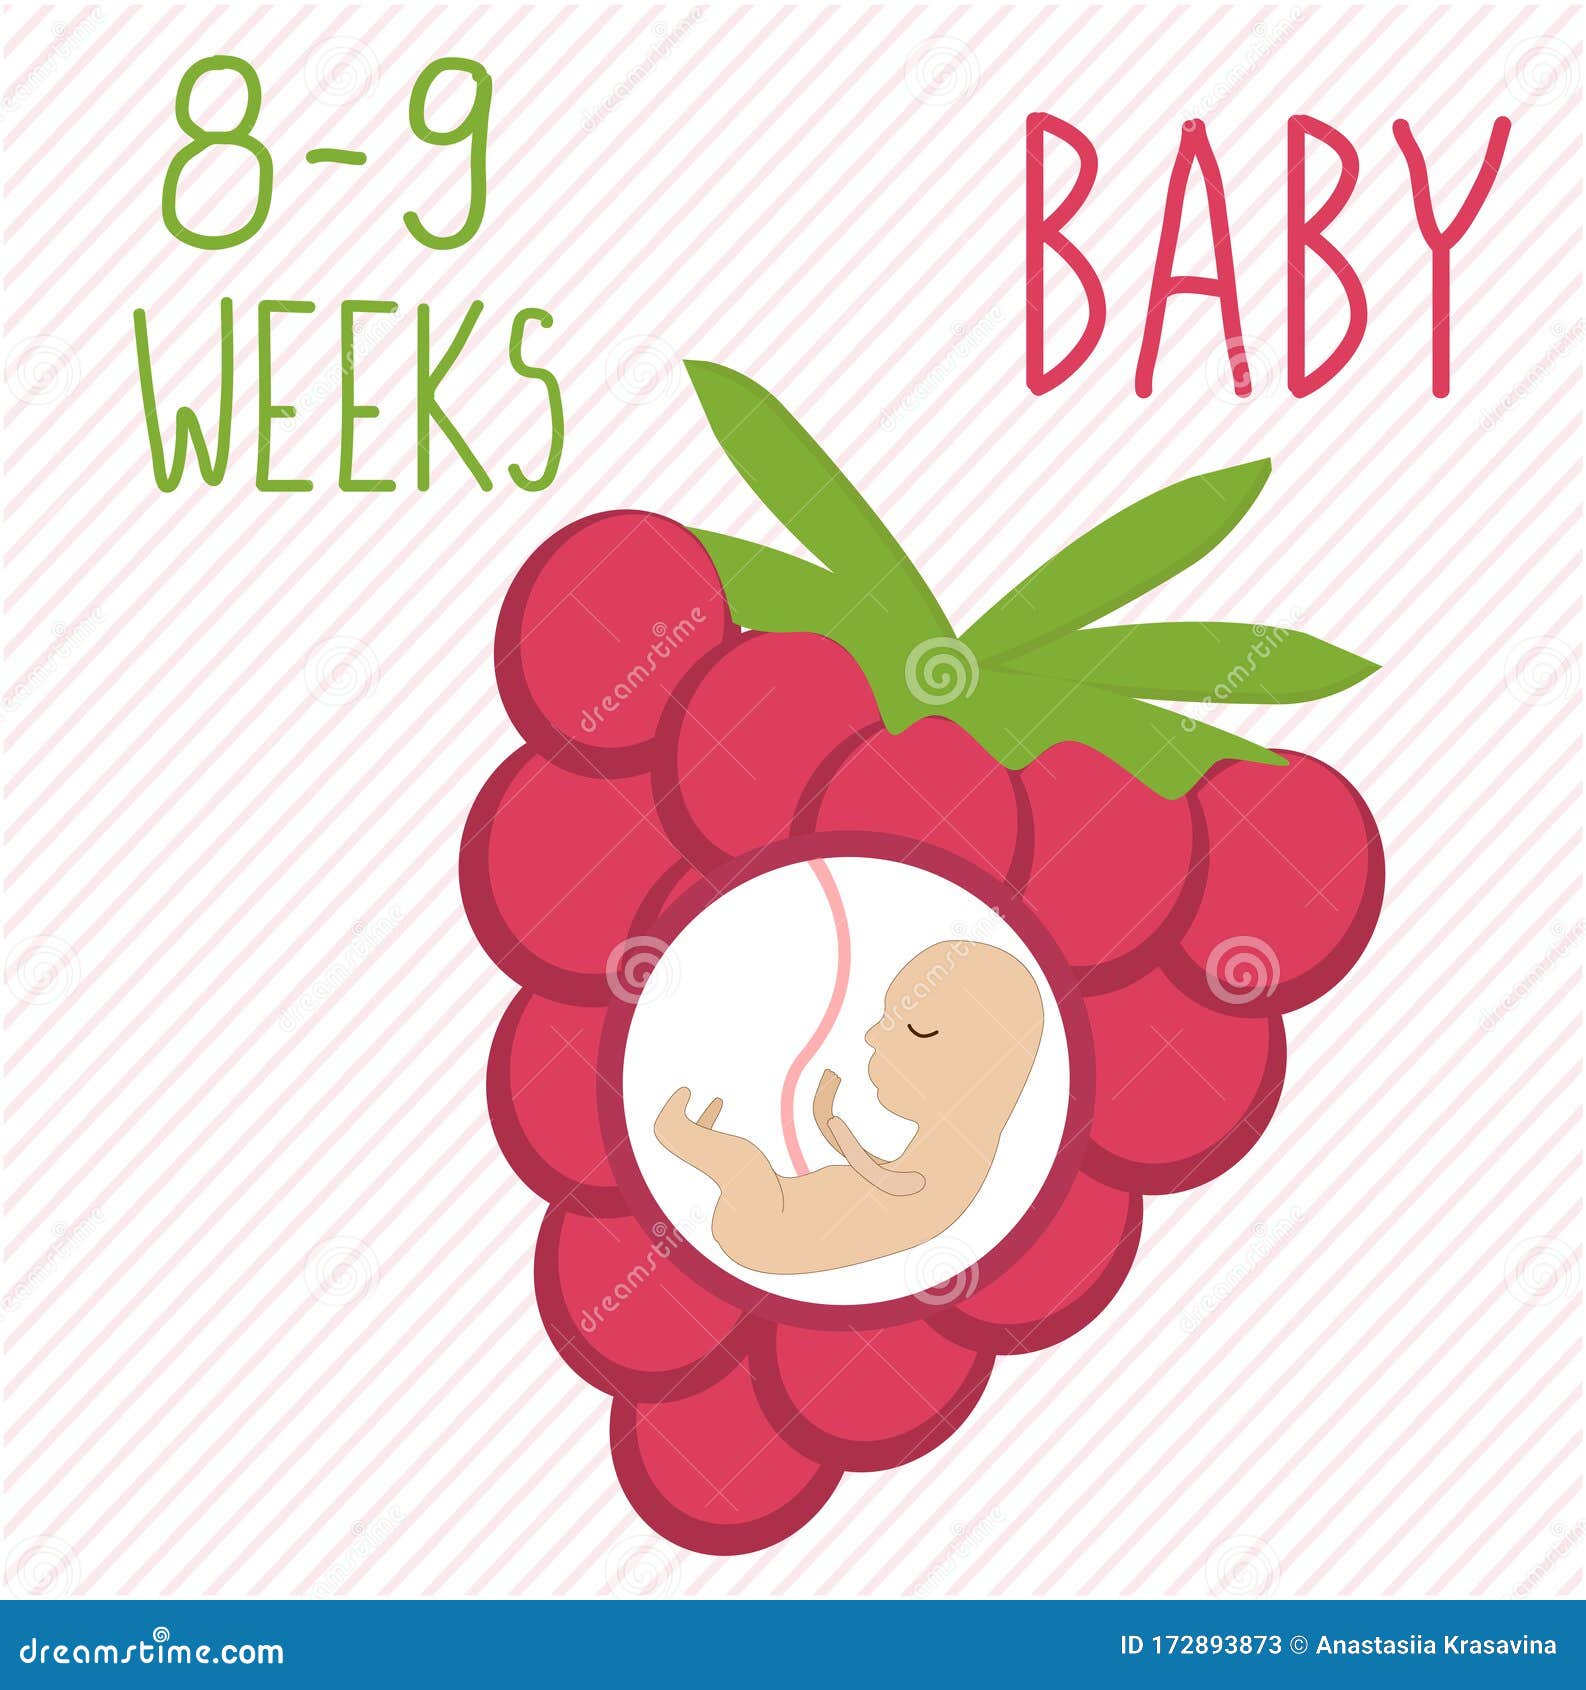 Raspberry Desarrollo Del Embarazo, Tamaño Del Embrión Durante 26-27 Semanas Comparar Con Feto Humano Dentro Del útero 2 Me Stock de ilustración - Ilustración de sano, parto: 172893873